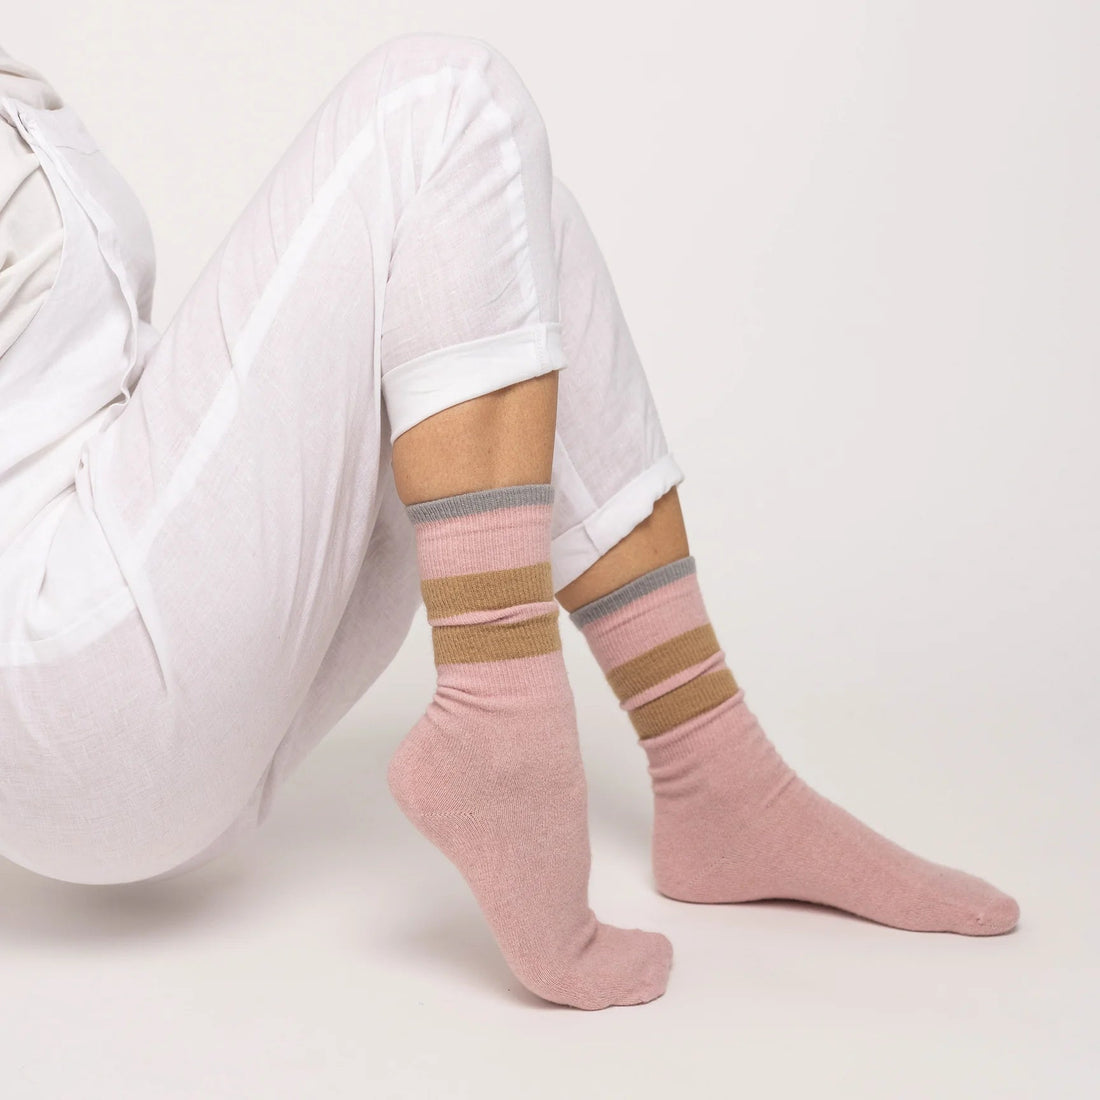 Nooan Socks - Dunedin, 3 Stripe Pink Marshmallow - The Flower Crate